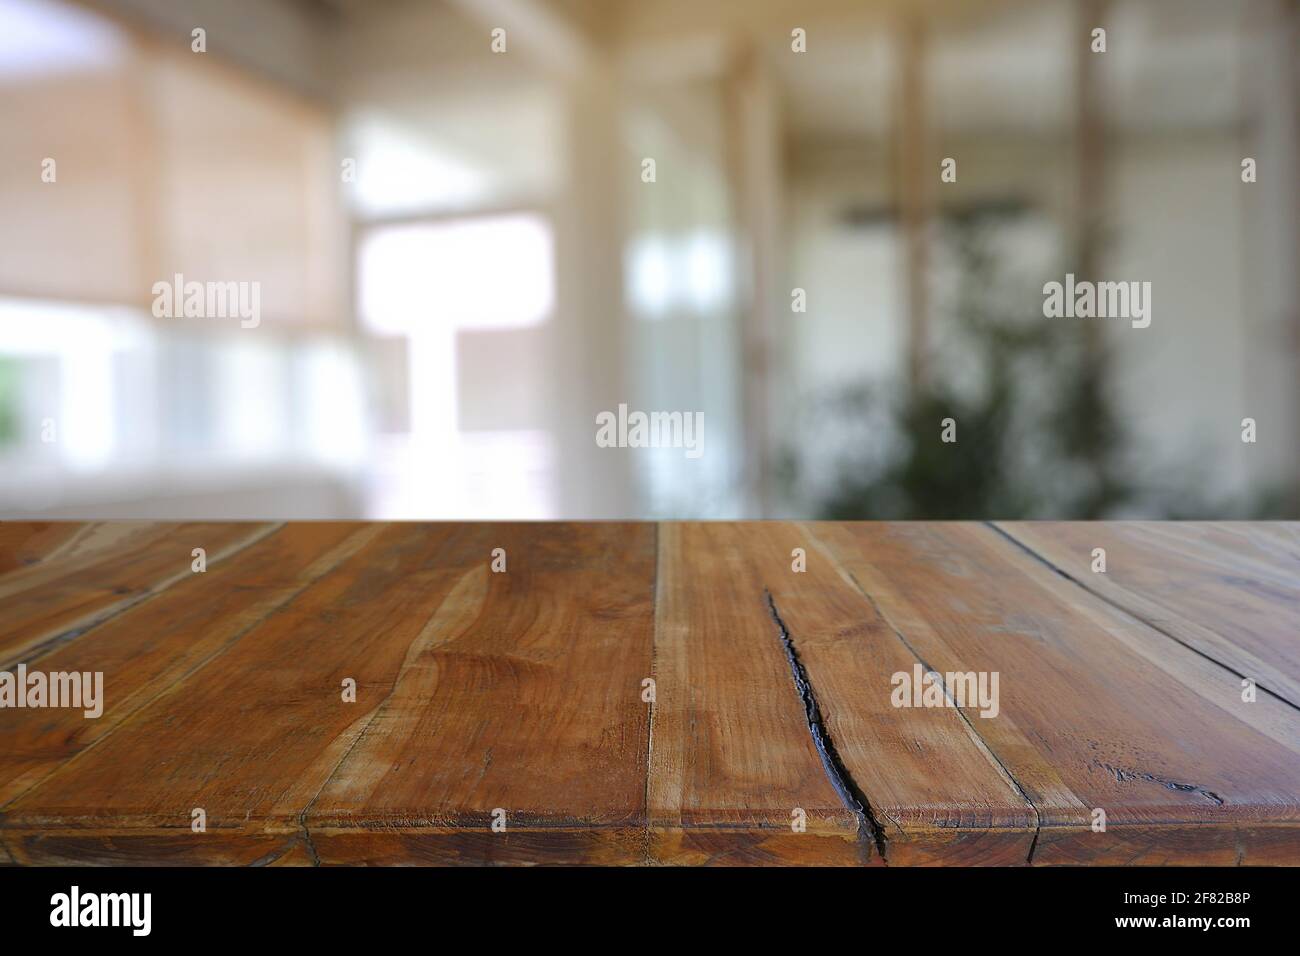 Leerer Holztisch vor dem abstrakten Blurred Cafe, Restaurant in der Nacht. Für die Montage der Produktanzeige oder für das Design eines visuellen Layouts - Bild Stockfoto